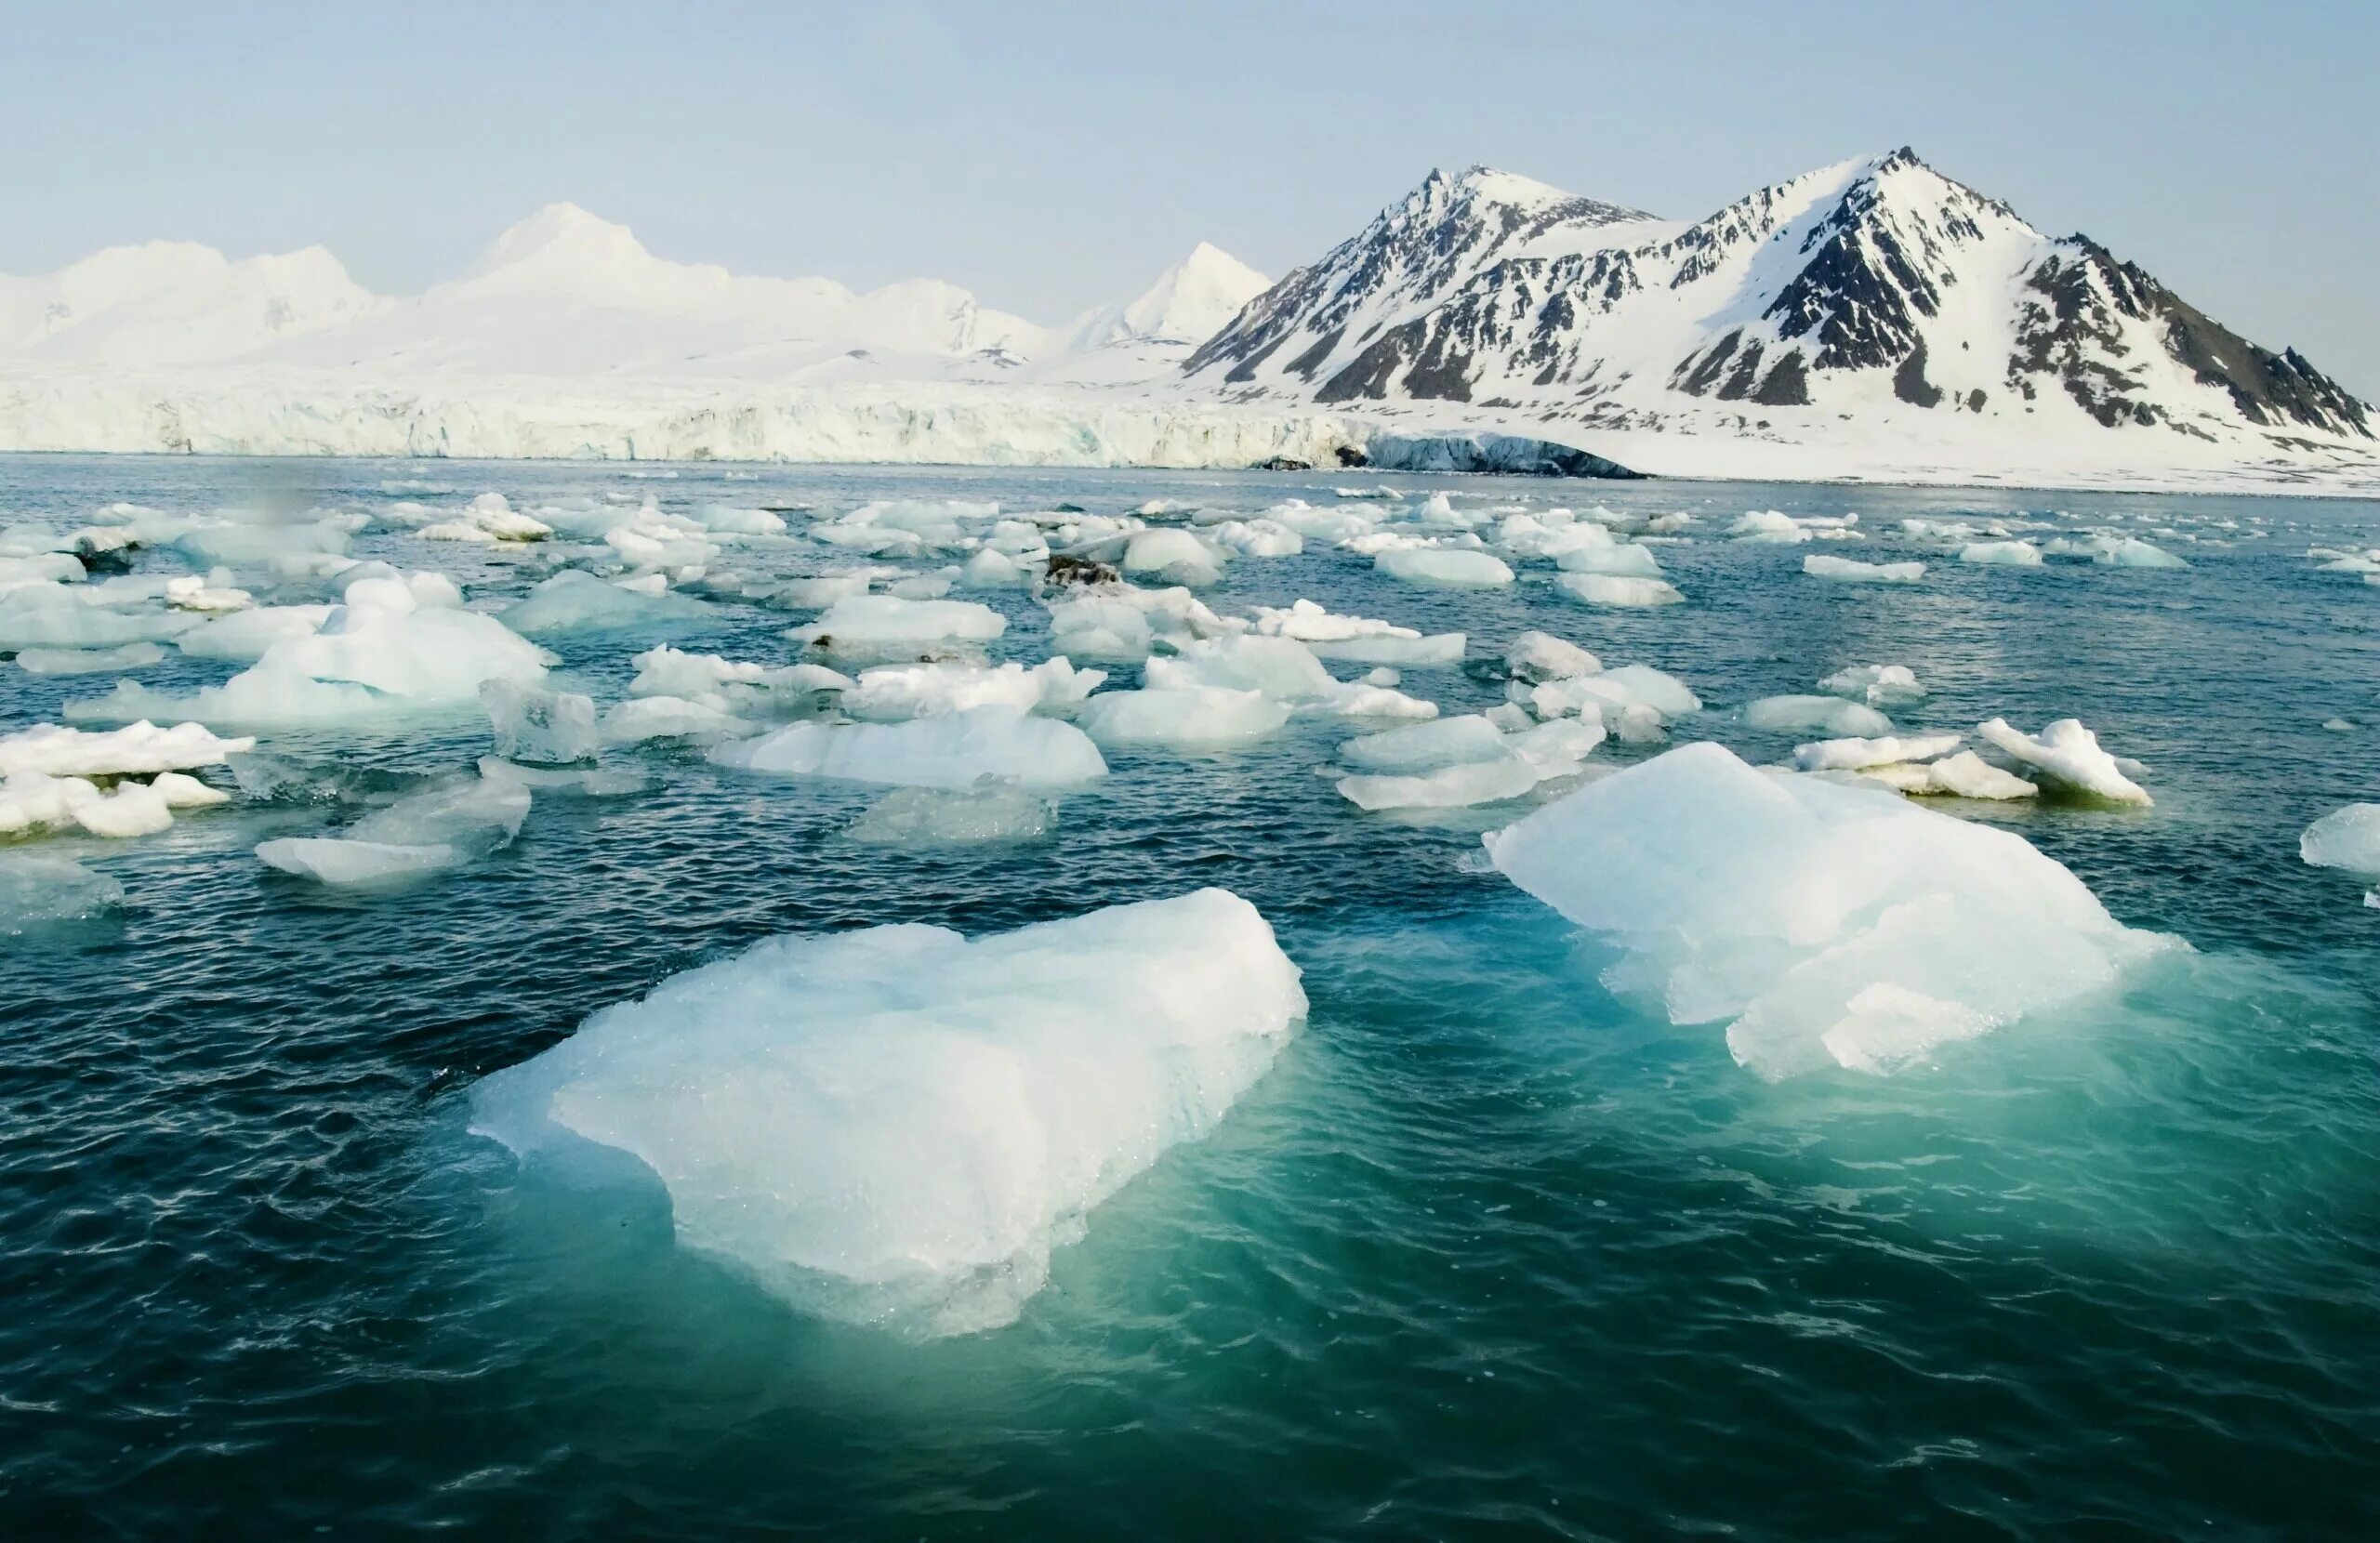 Арктика Северный Ледовитый океан. Арктика Северо Ледовитого океана. Северный Ледовитый океан и Антарктида. Арктический пояс Северной Америки. Arctic countries